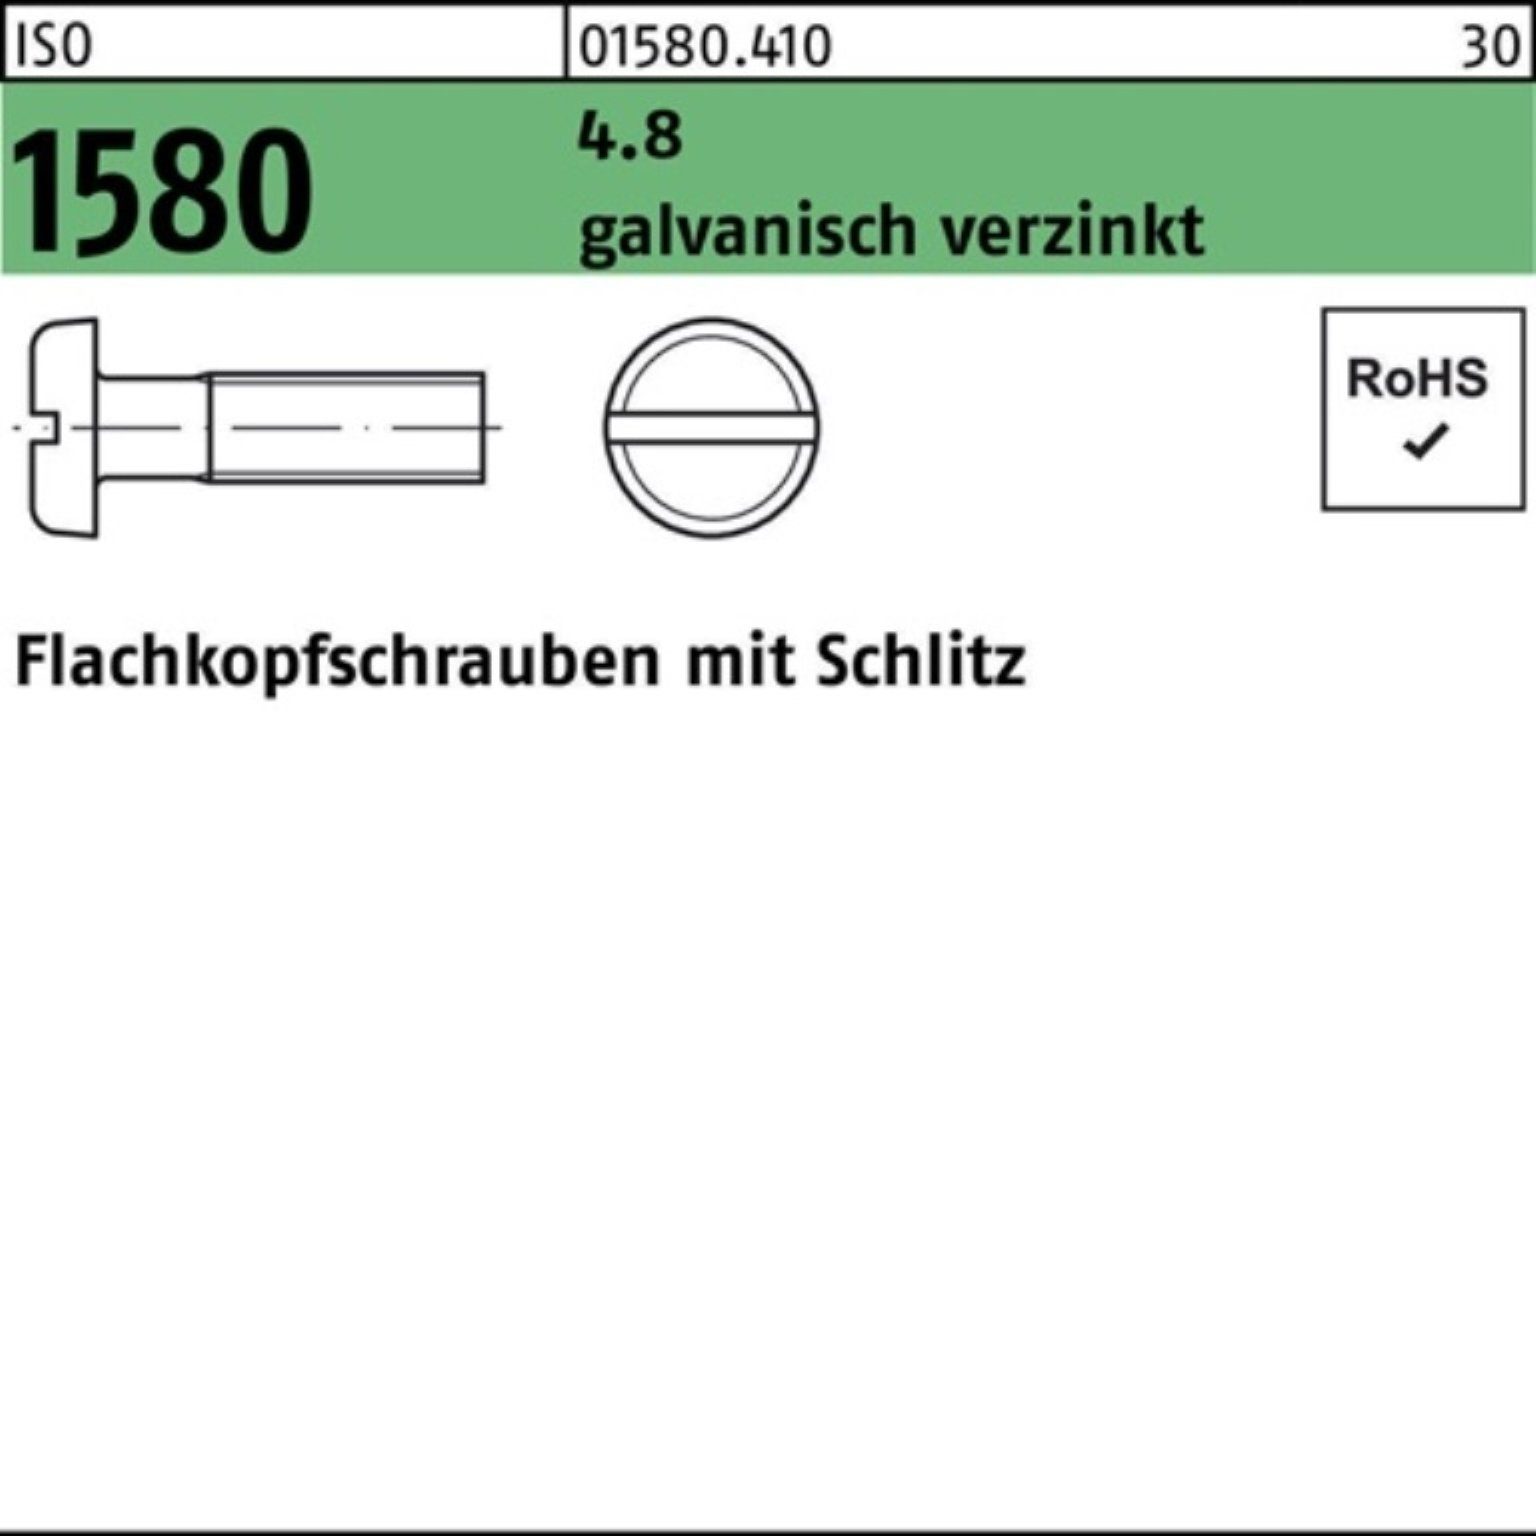 Reyher Schraube M3x 200er 4.8 Schlitz 1580 ISO galv.verz. 20 Pack 40 Flachkopfschraube